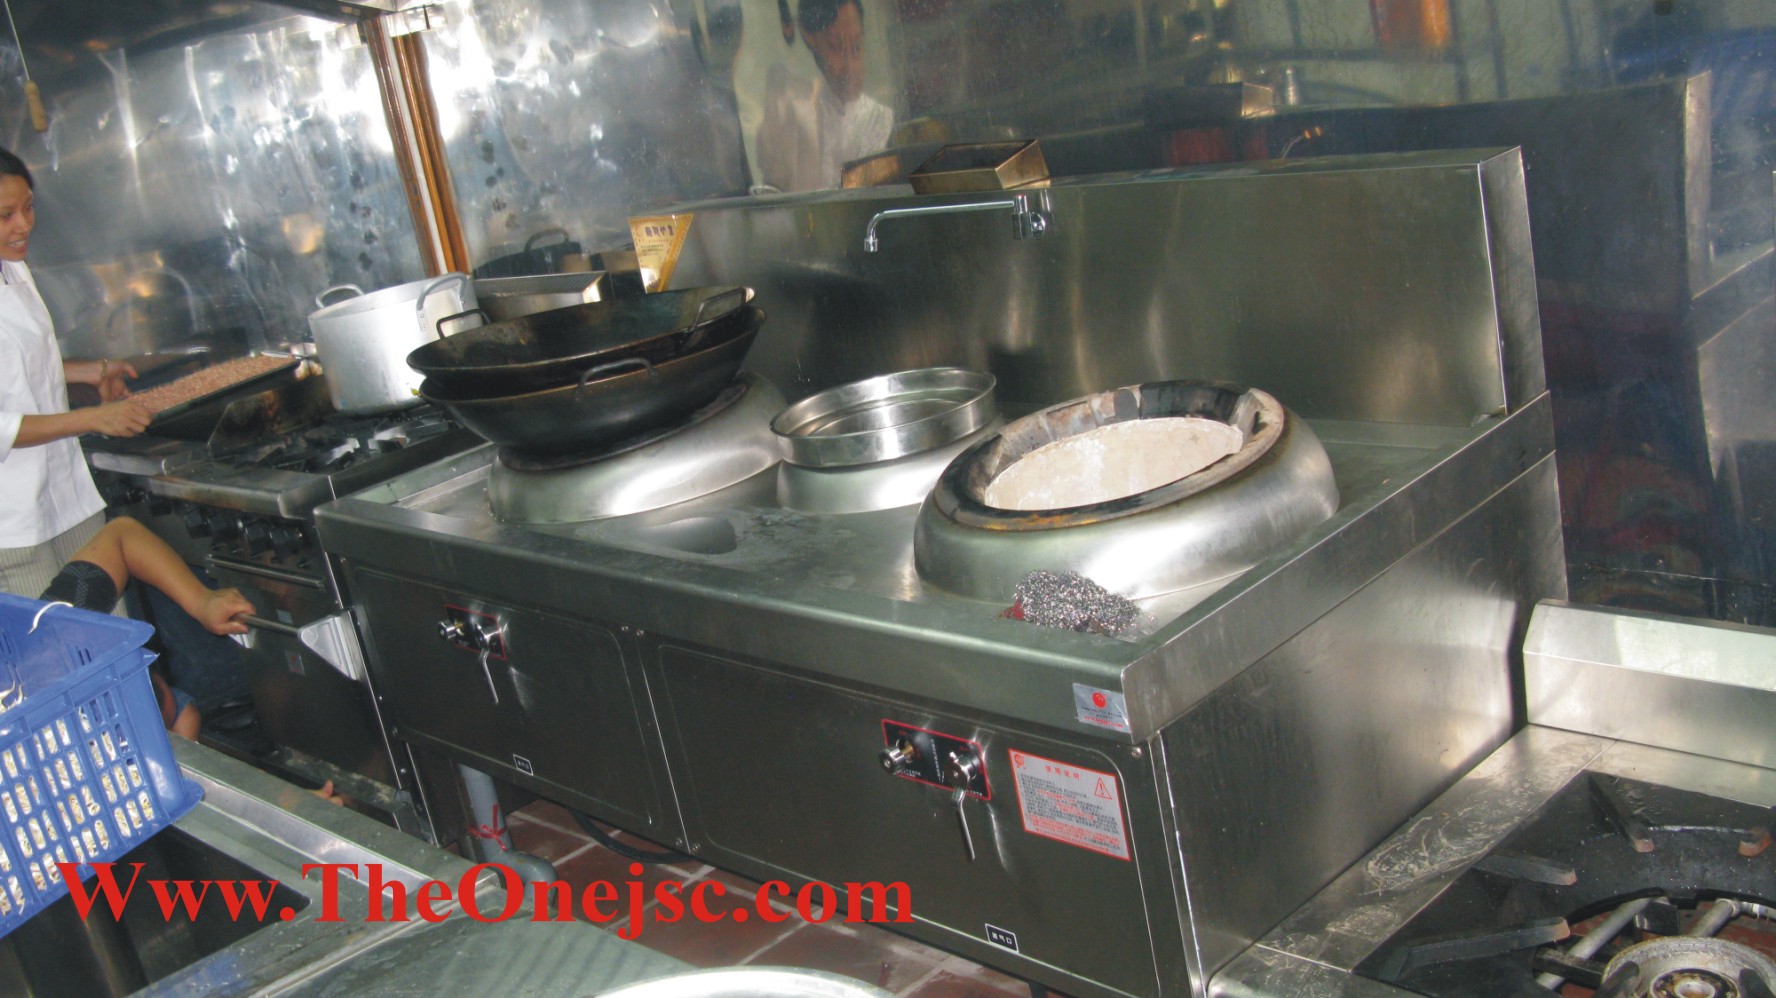 Hệ Thống bếp ăn nhà hàng khách san -2, bếp công nghiệp